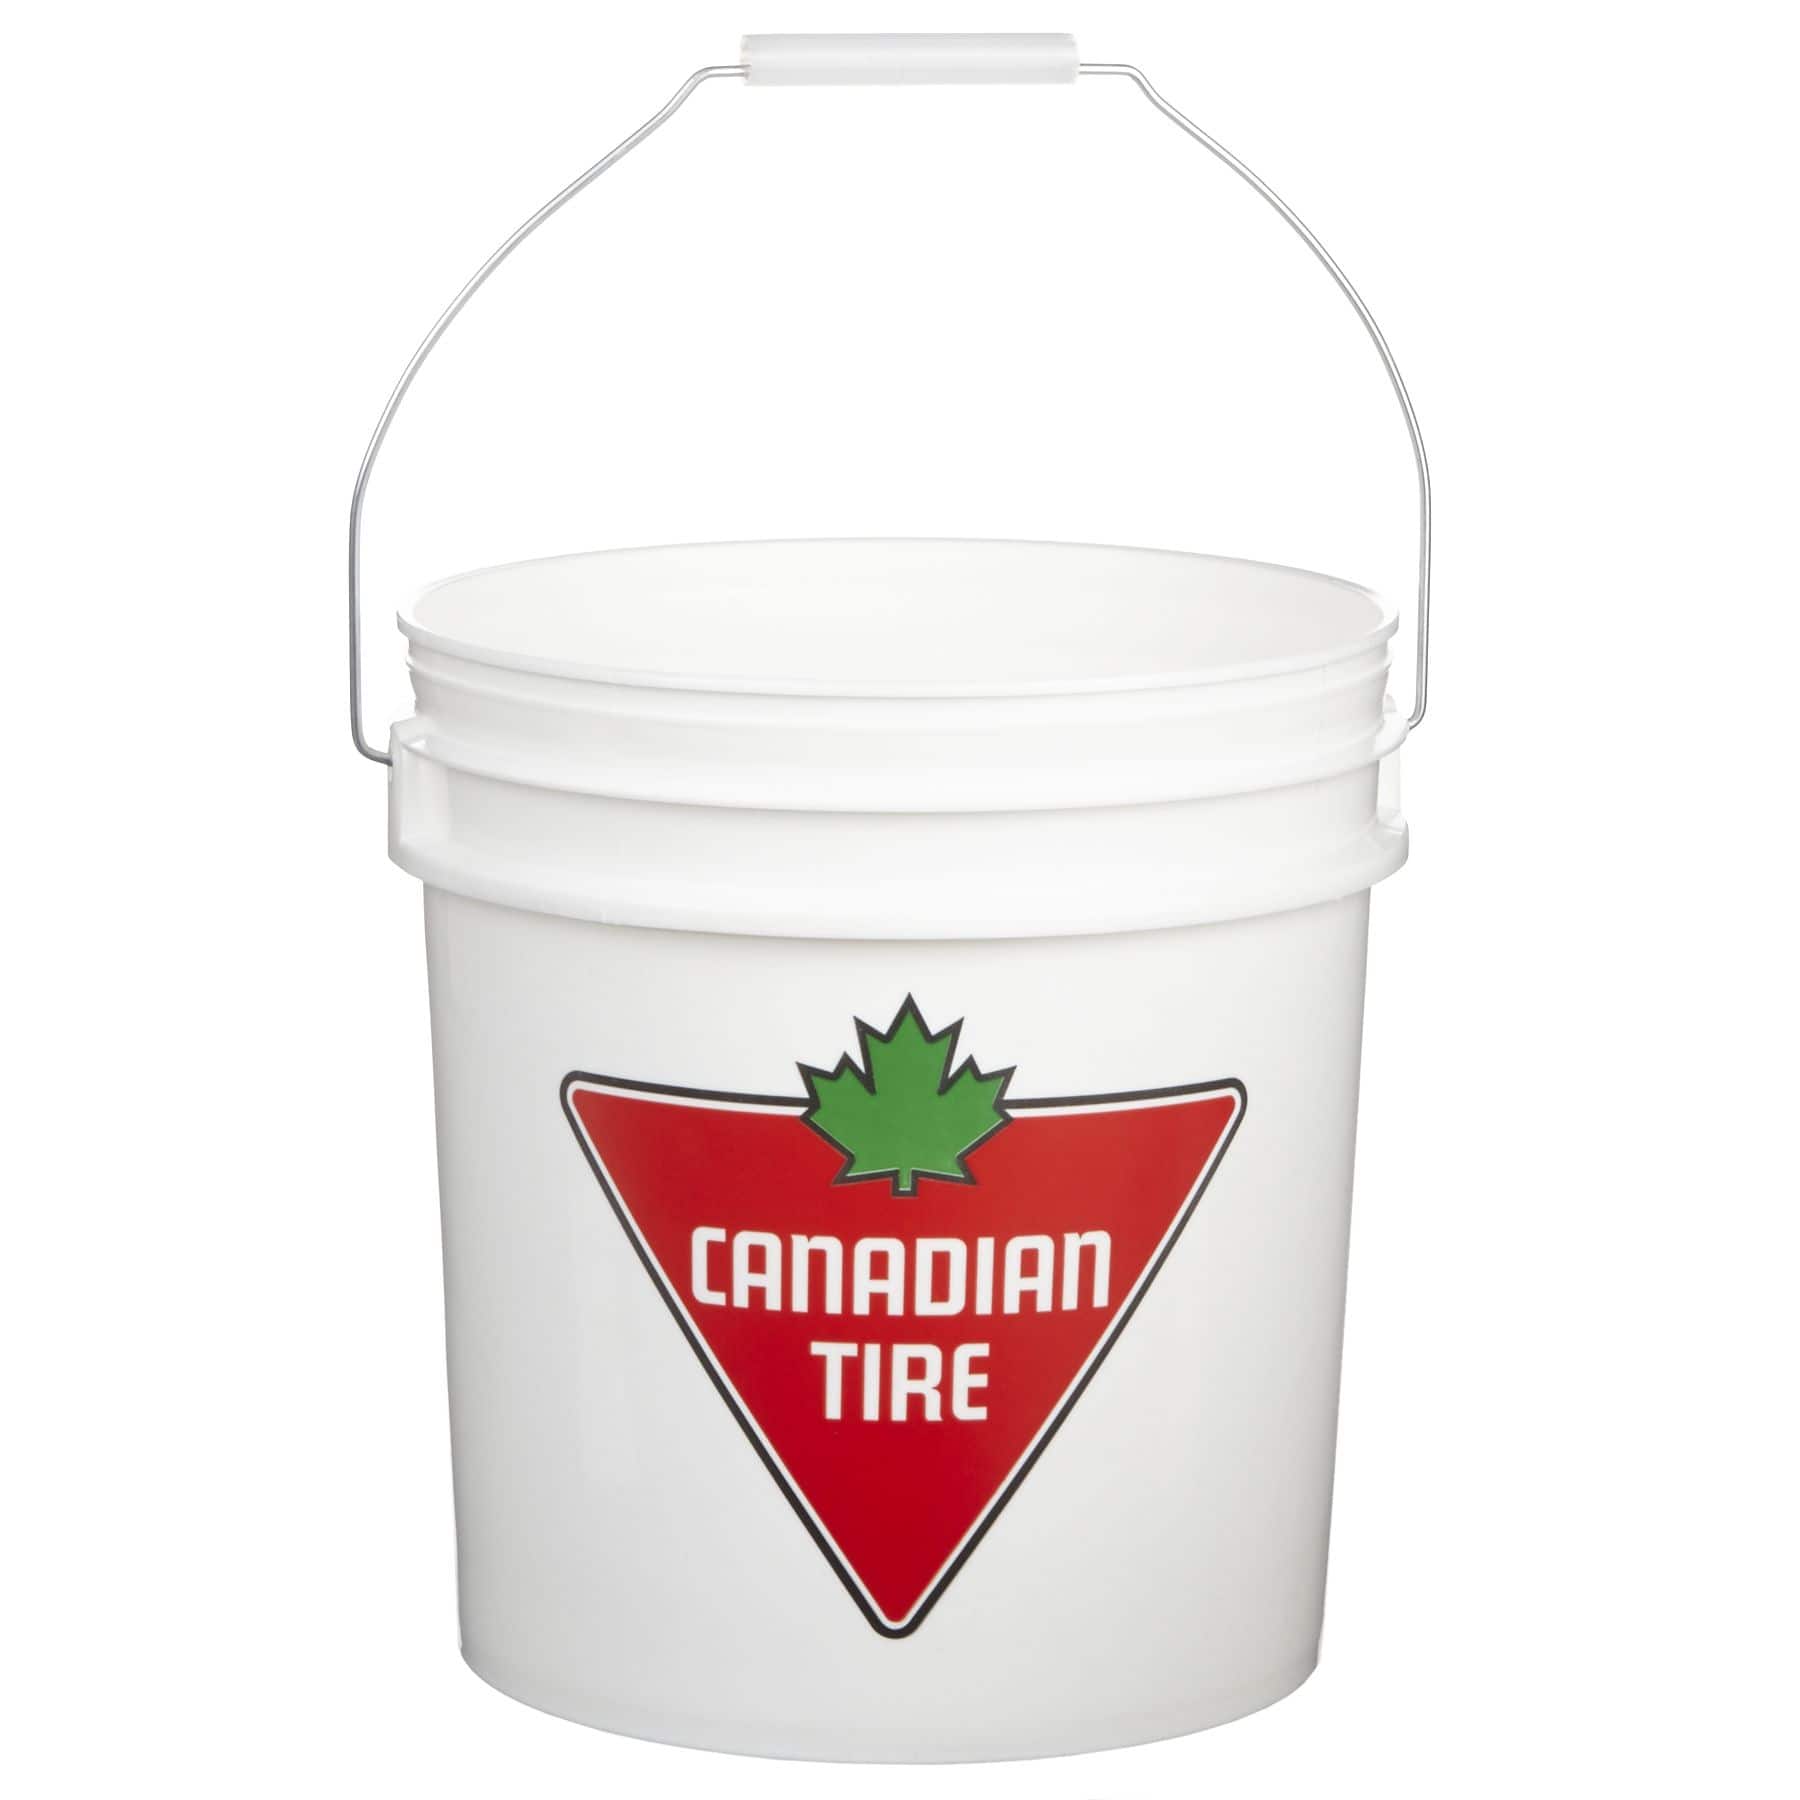 Canadian Tire Sturdy Plastic Food Grade Safe Bucket, 8L